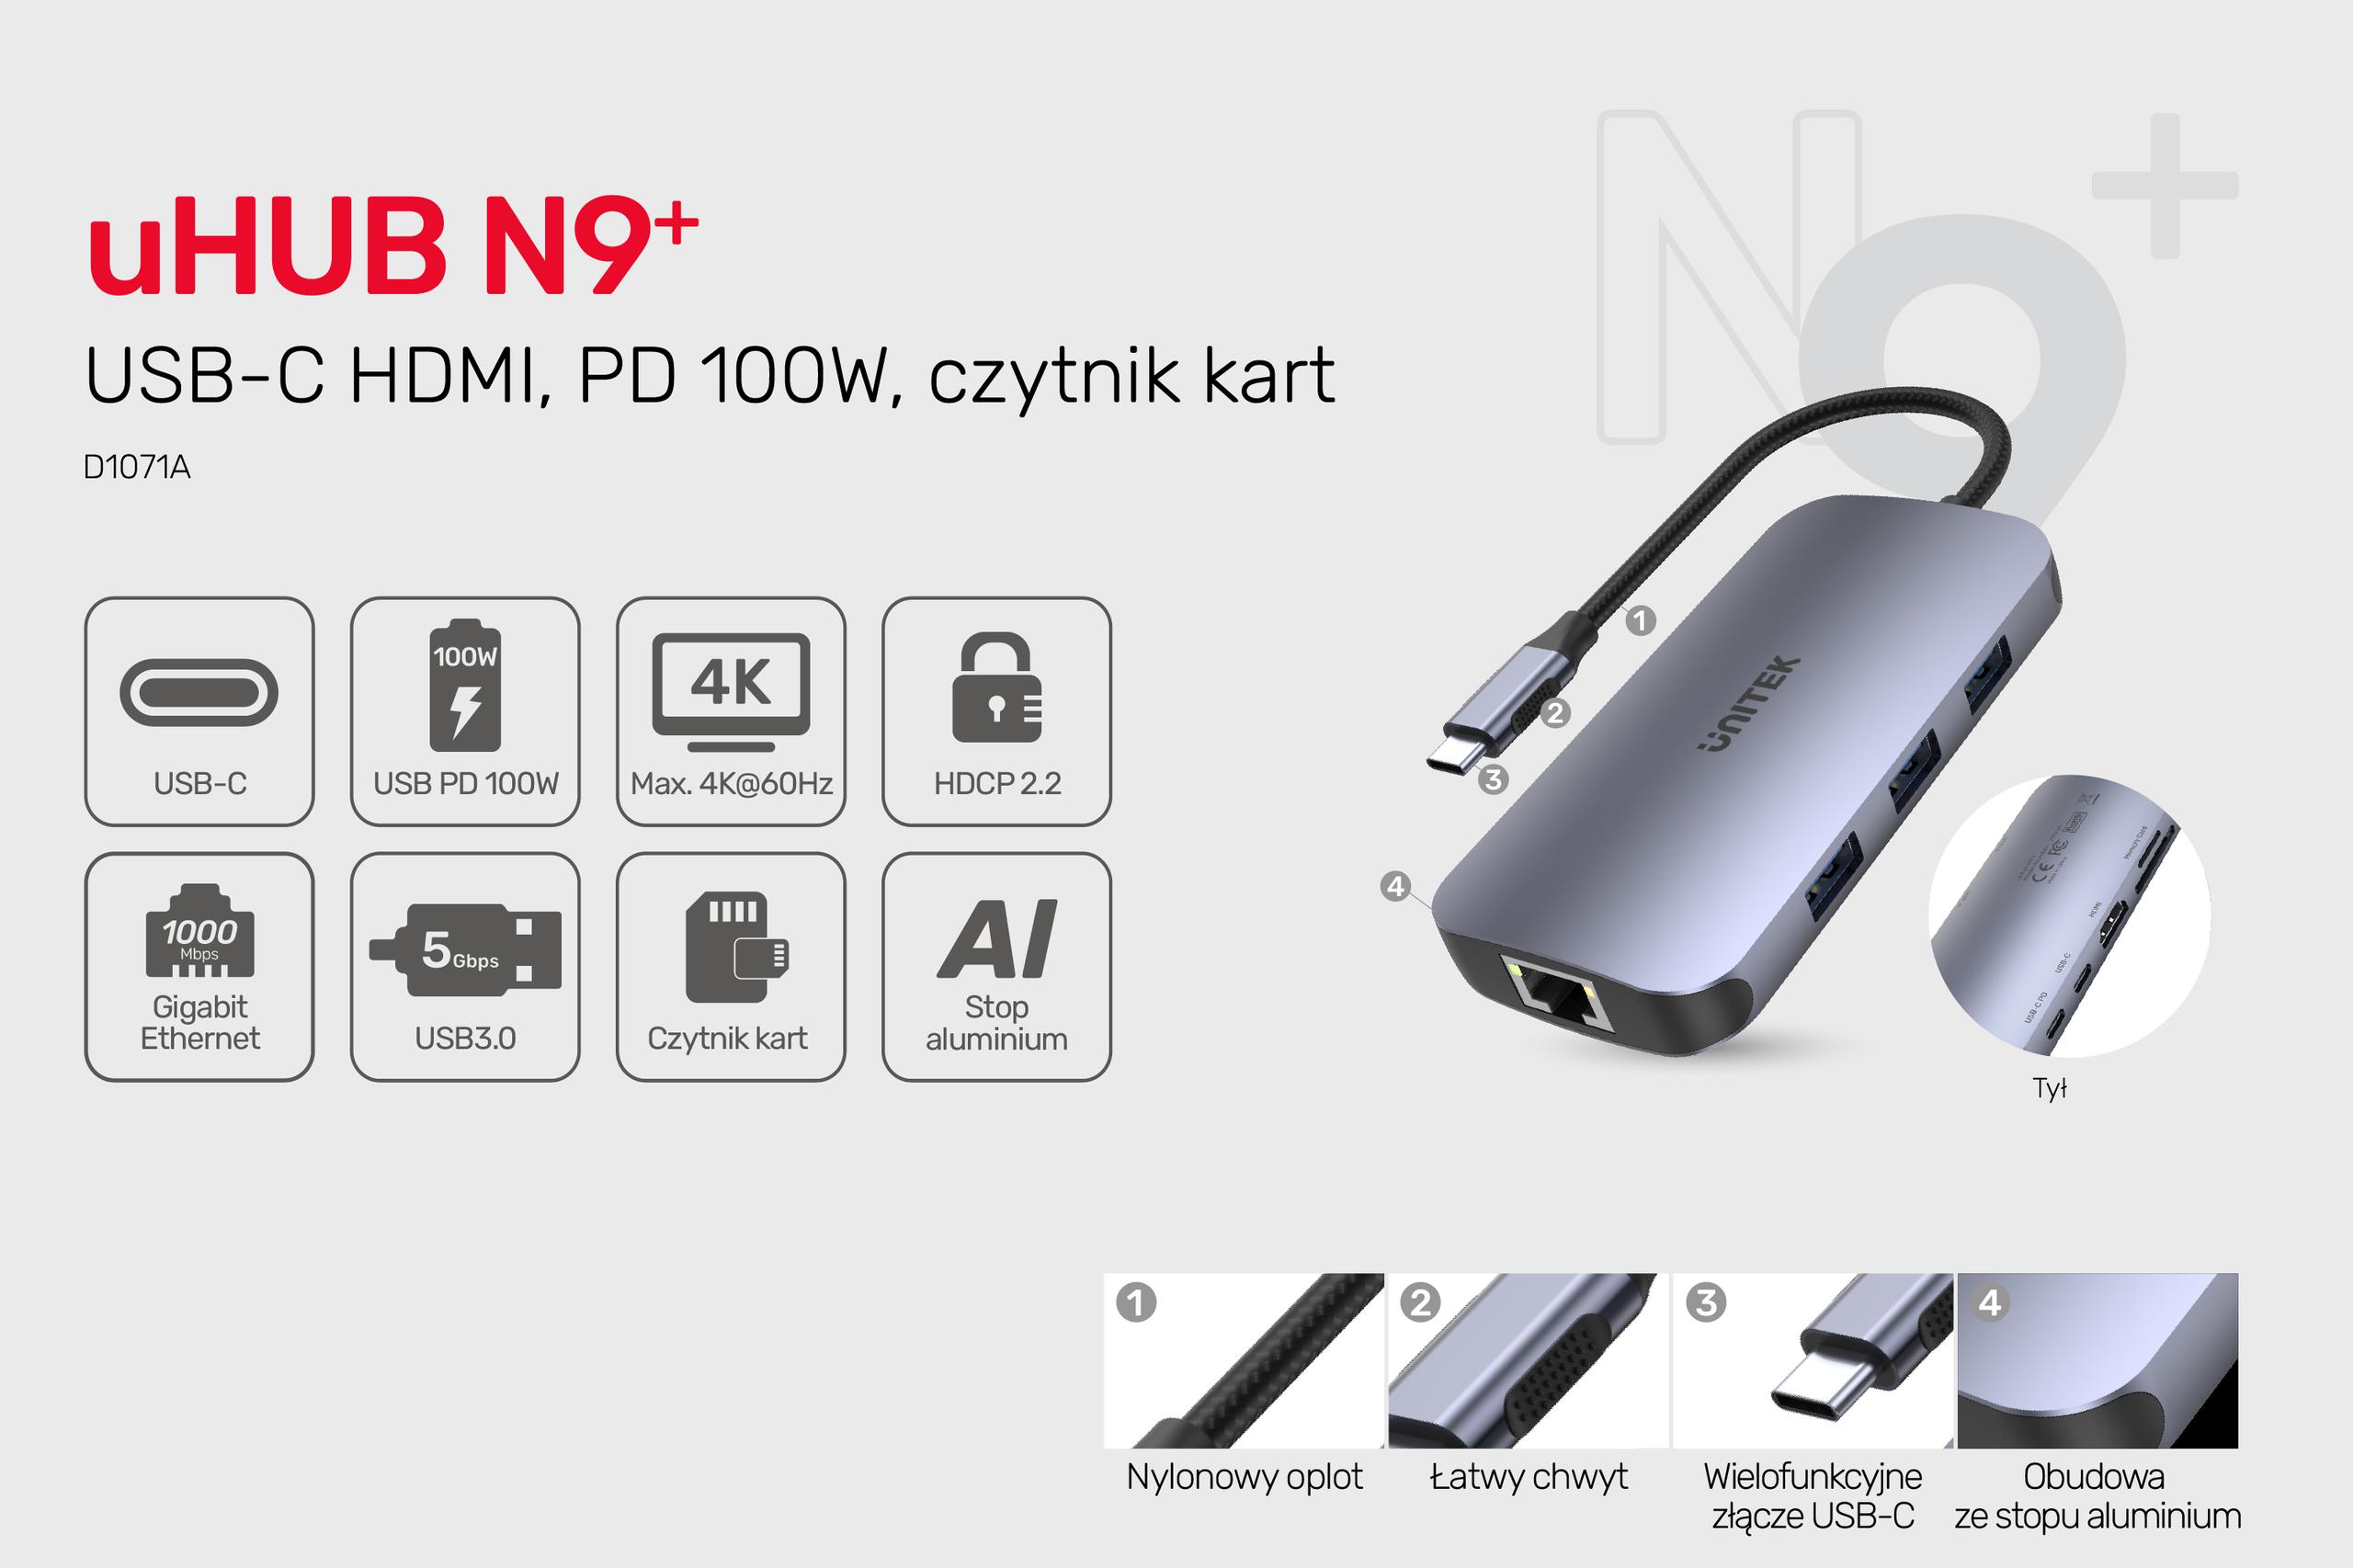 Unitek D1071A Hub N9+ USB-C HDMI, PD 100W, czytnik kart